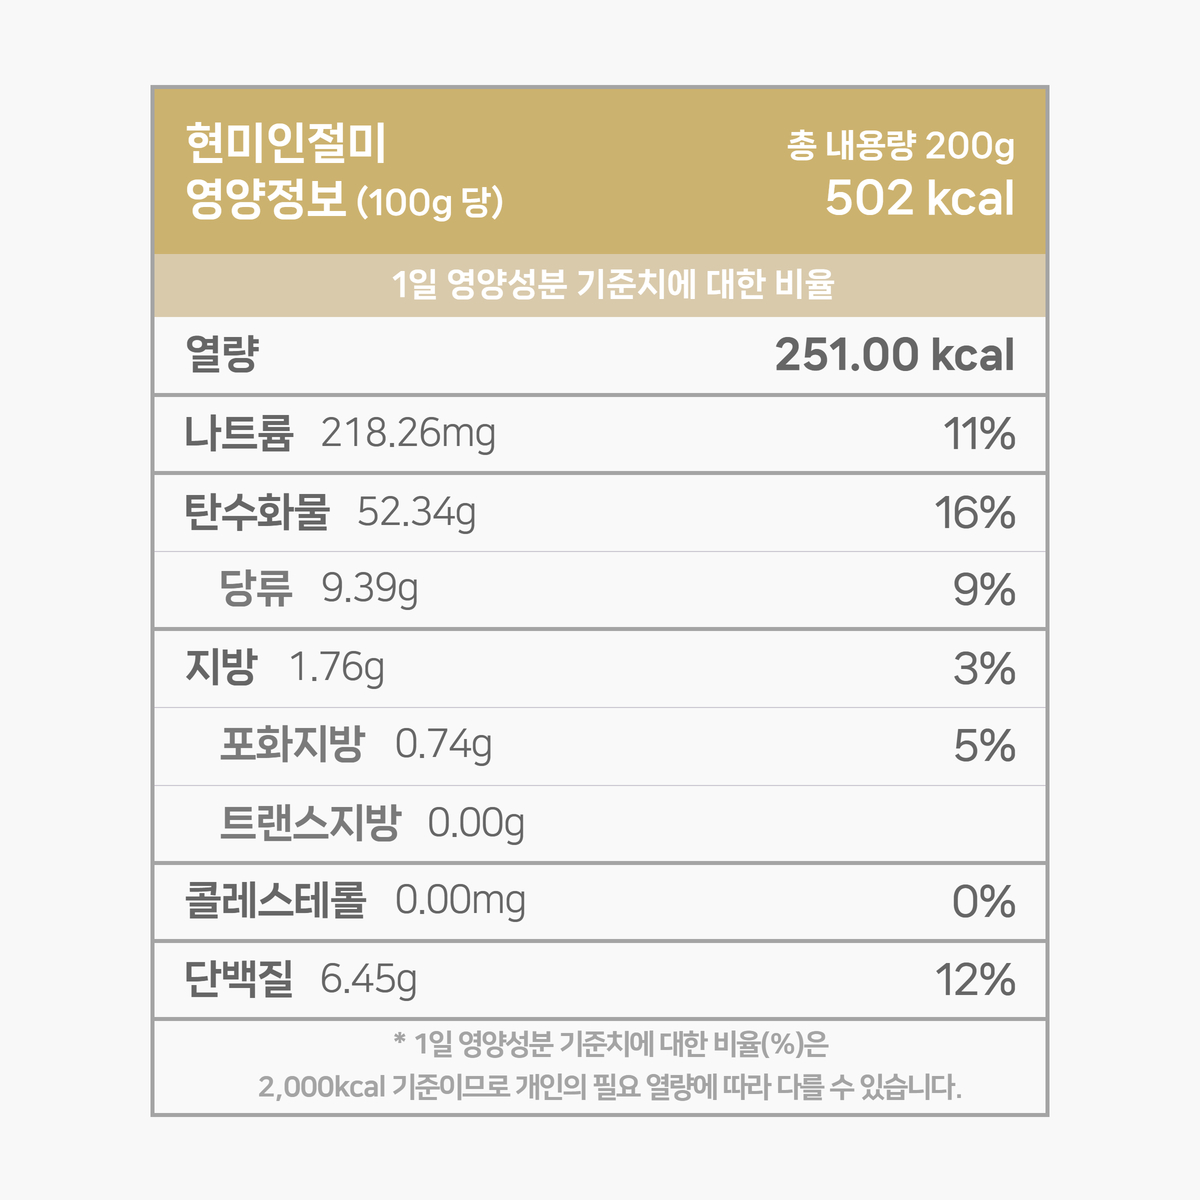 영양성분 표입니다. 인절미 100g 기준 251.00 칼로리. 다음은 칼로리를 제외한 다른 영양성분 입니다. 칼로리 외 영양성분은 1일 영양성분 기준치에 대한 비율도 퍼센트로 표기되어 있습니다. 그 목록입니다. 나트륨 218.26mg 11%, 탄수화물 52.33g 16%, 당류 9.39g 9%, 지방 1.76g 3%, 트랜스지방 0.00g 0%, 포화지방 0.74g 1%, 콜레스테롤 0.00mg 0%, 단백질 6.45g 13%. 1일 영양성분 기준치에 대한 비율(퍼센트)는 2000칼로리 기준이므로 개인의 필요한 열량에 따라 다를 수 있습니다. 